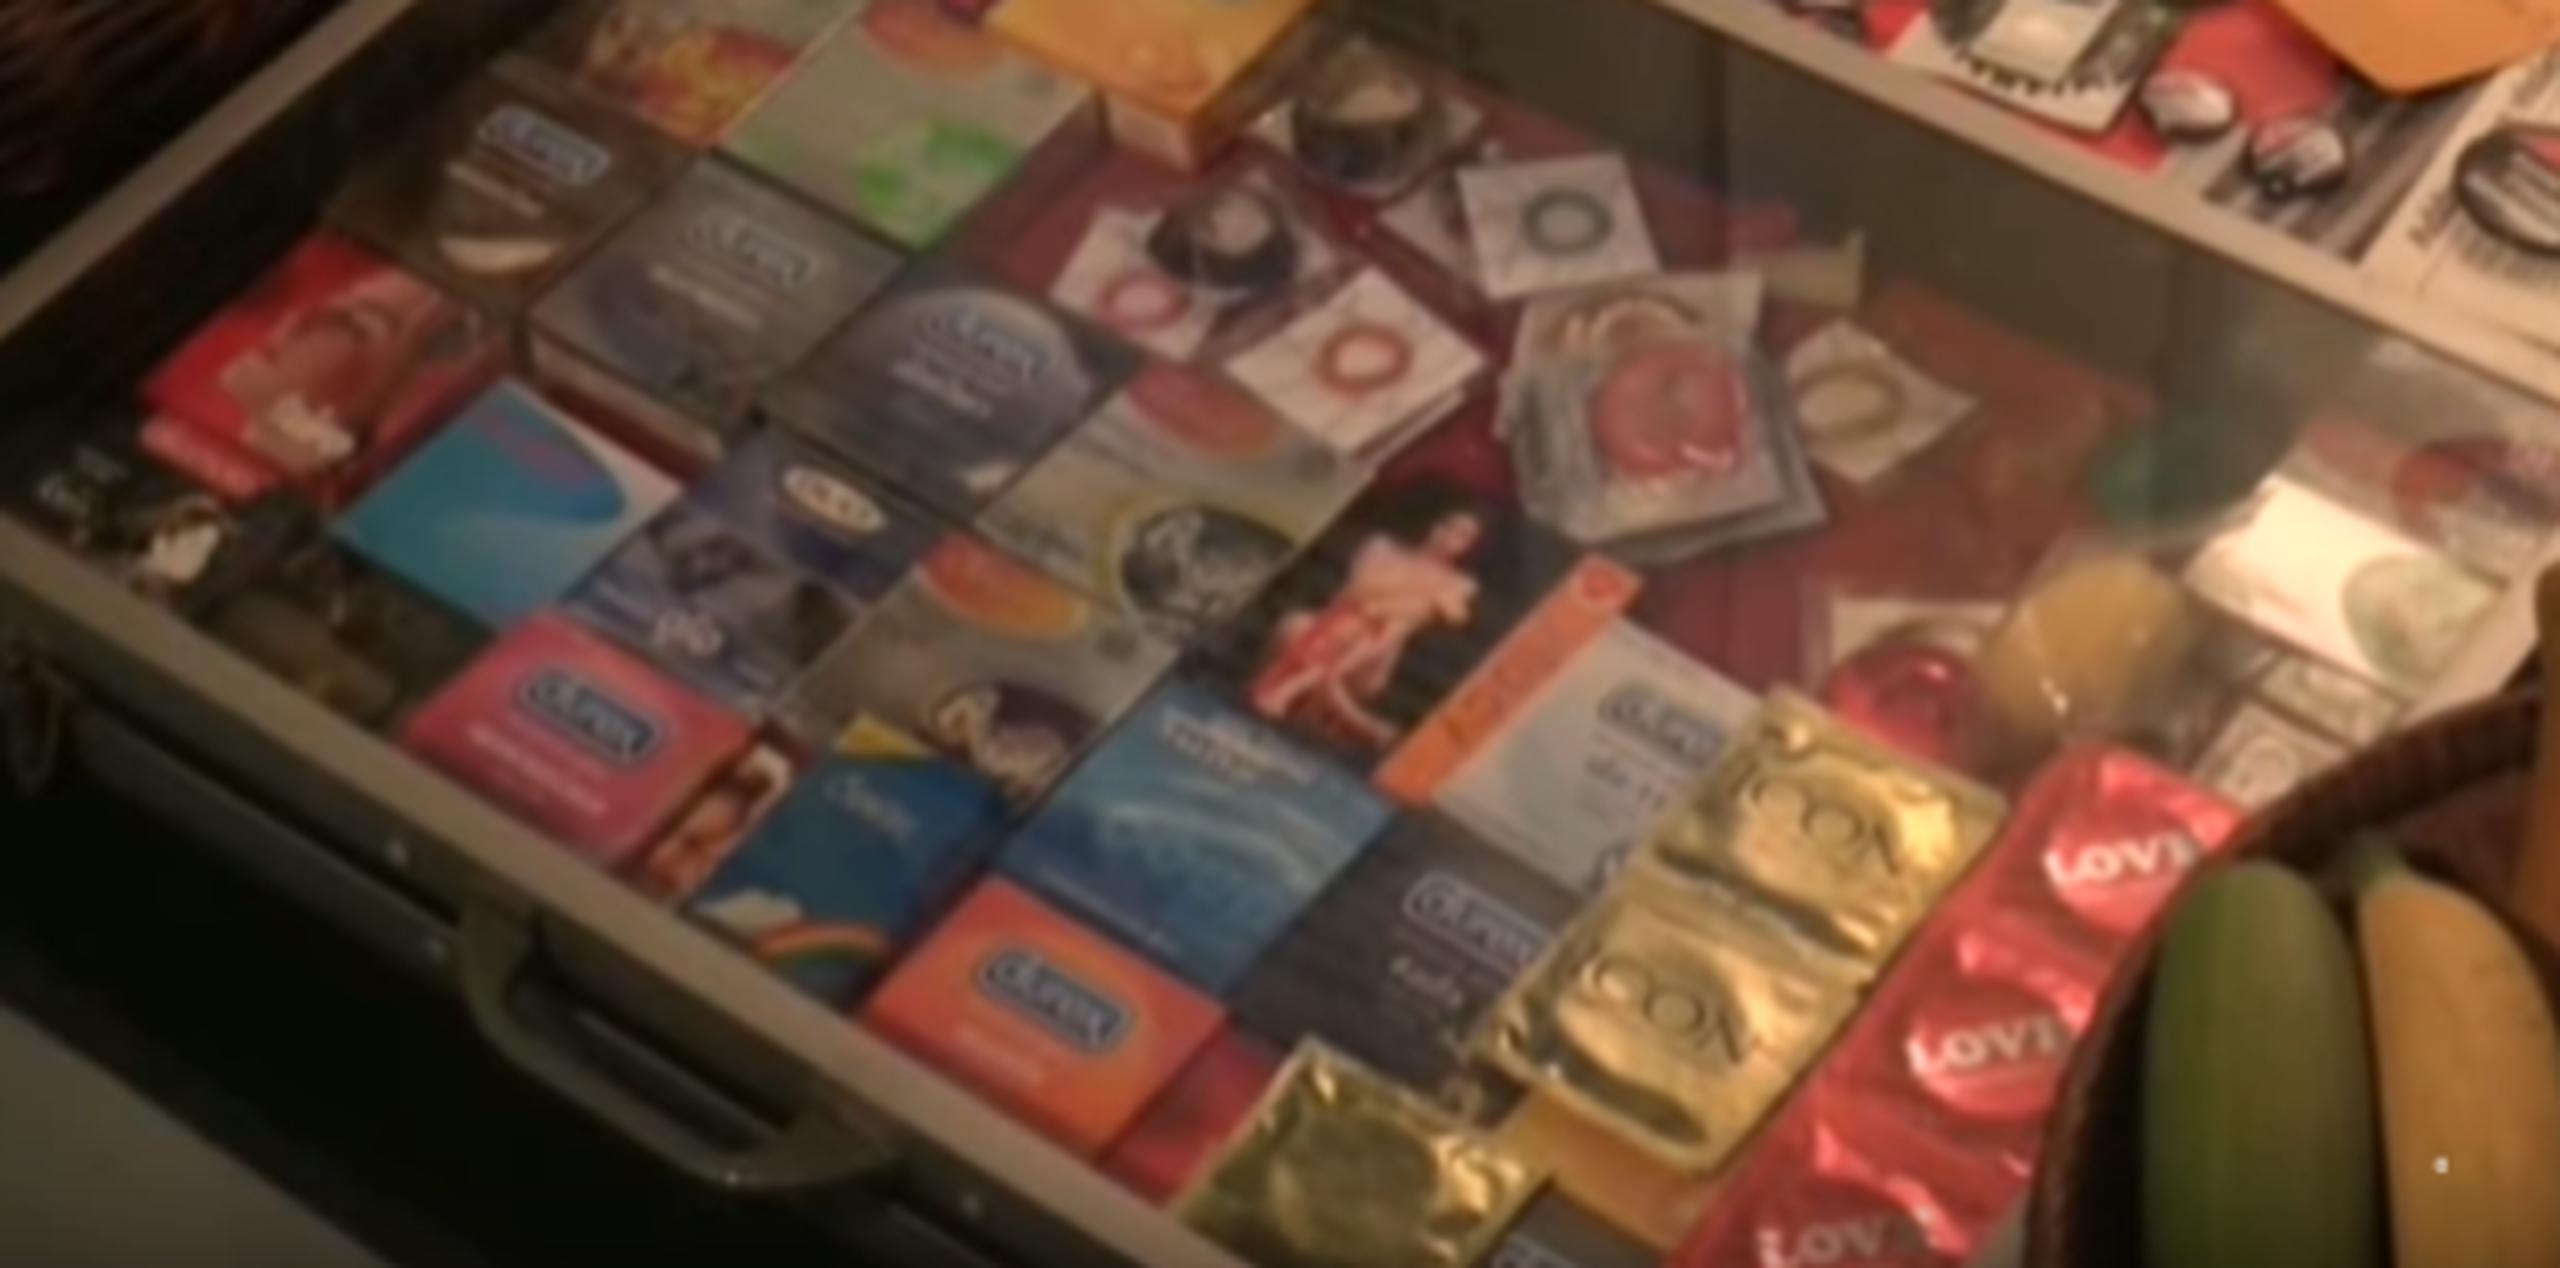 Tipos y tamaños de preservativos son parte de la exposición, para reflejar la continua "evolución" del sector. (EFE)